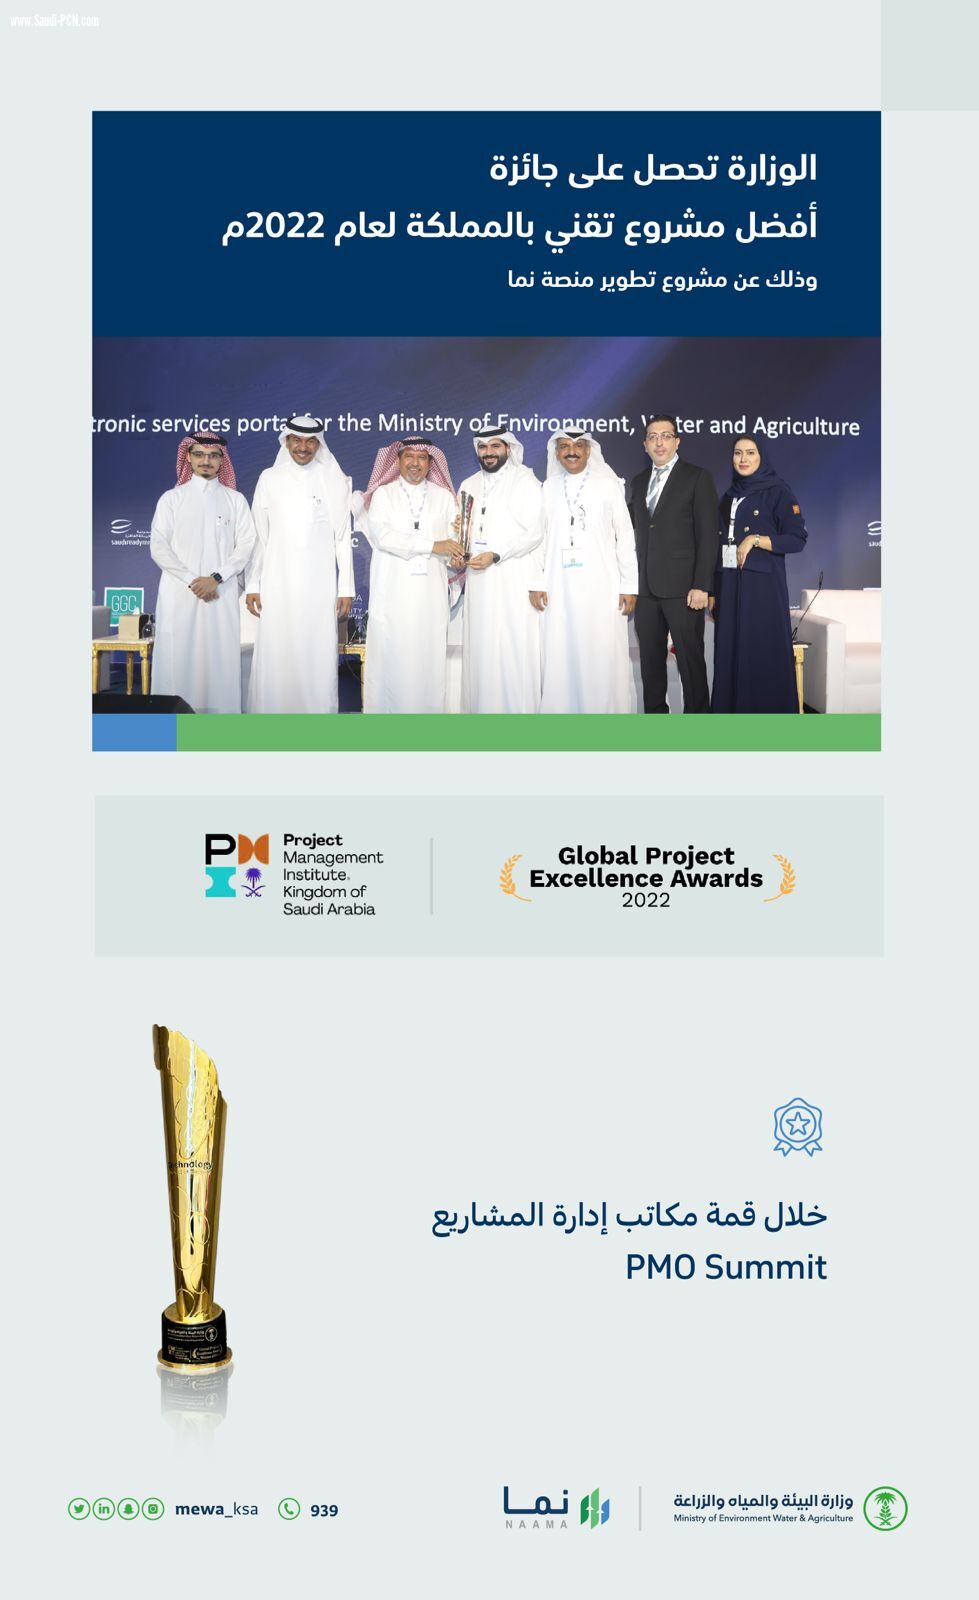 البيئةتحصل على جائزة أفضل مشروع تقني بالمملكة لعام 2022 عن منصة نمالإلكترونية